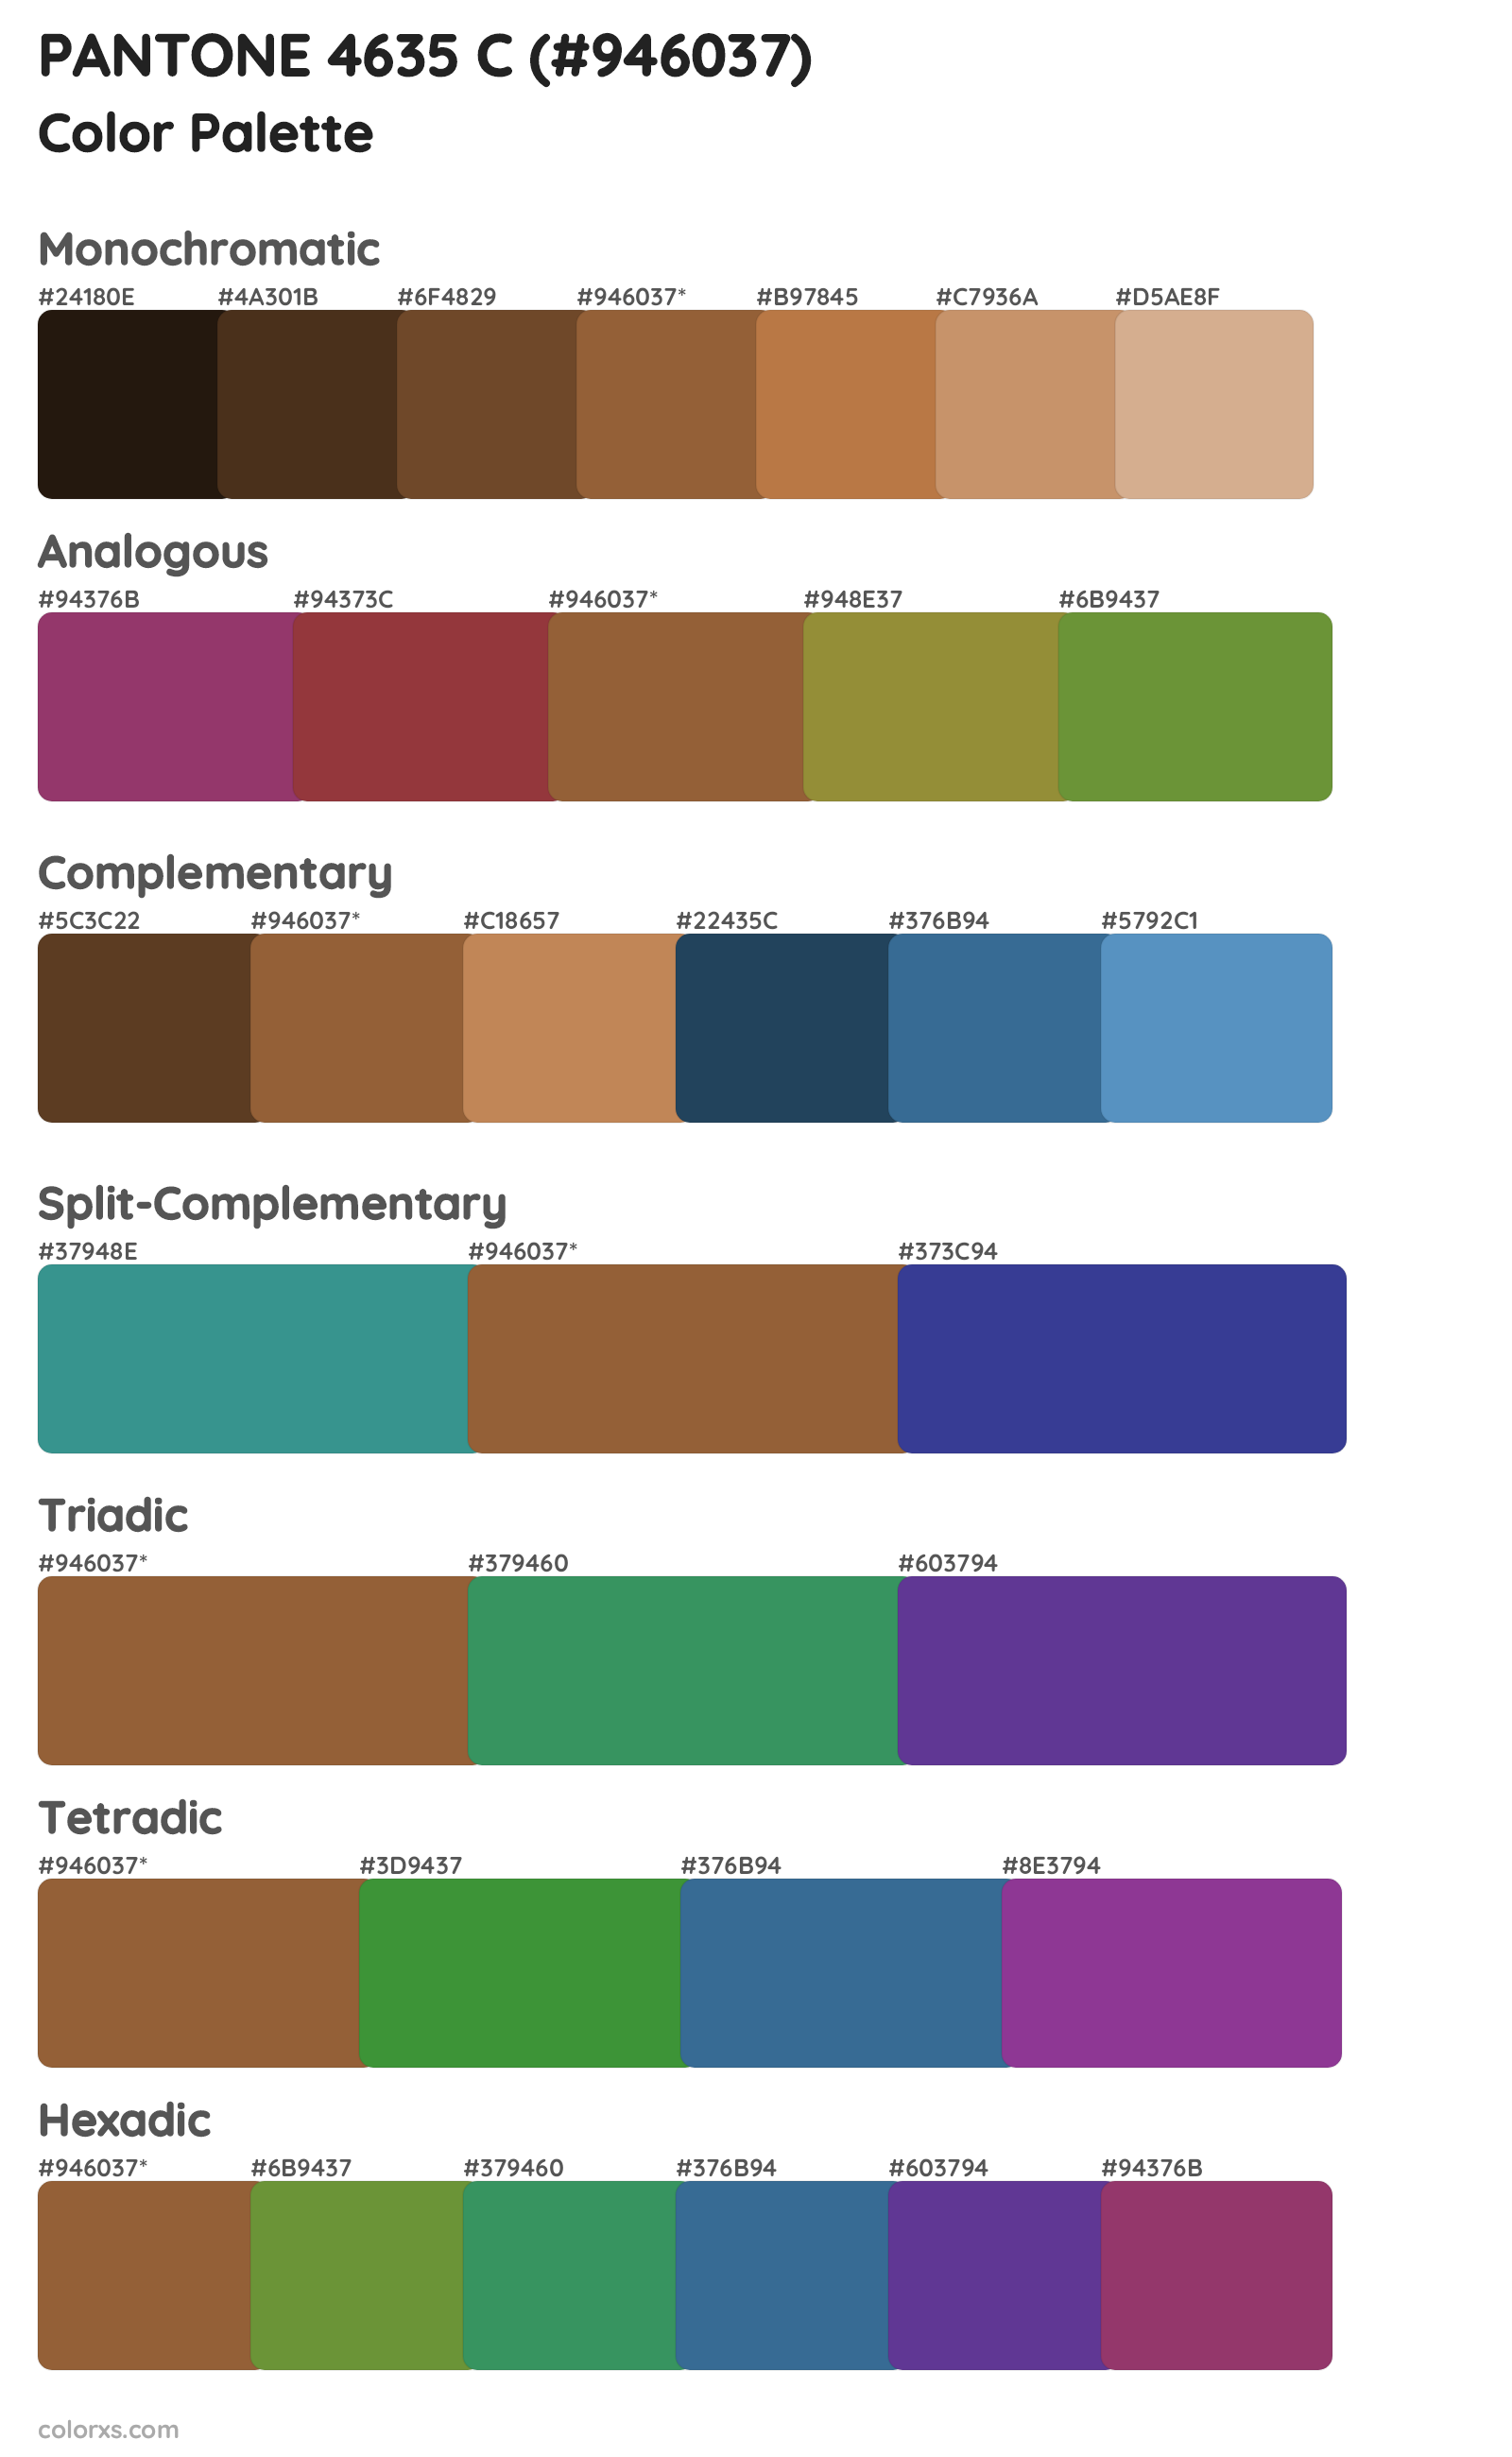 PANTONE 4635 C Color Scheme Palettes